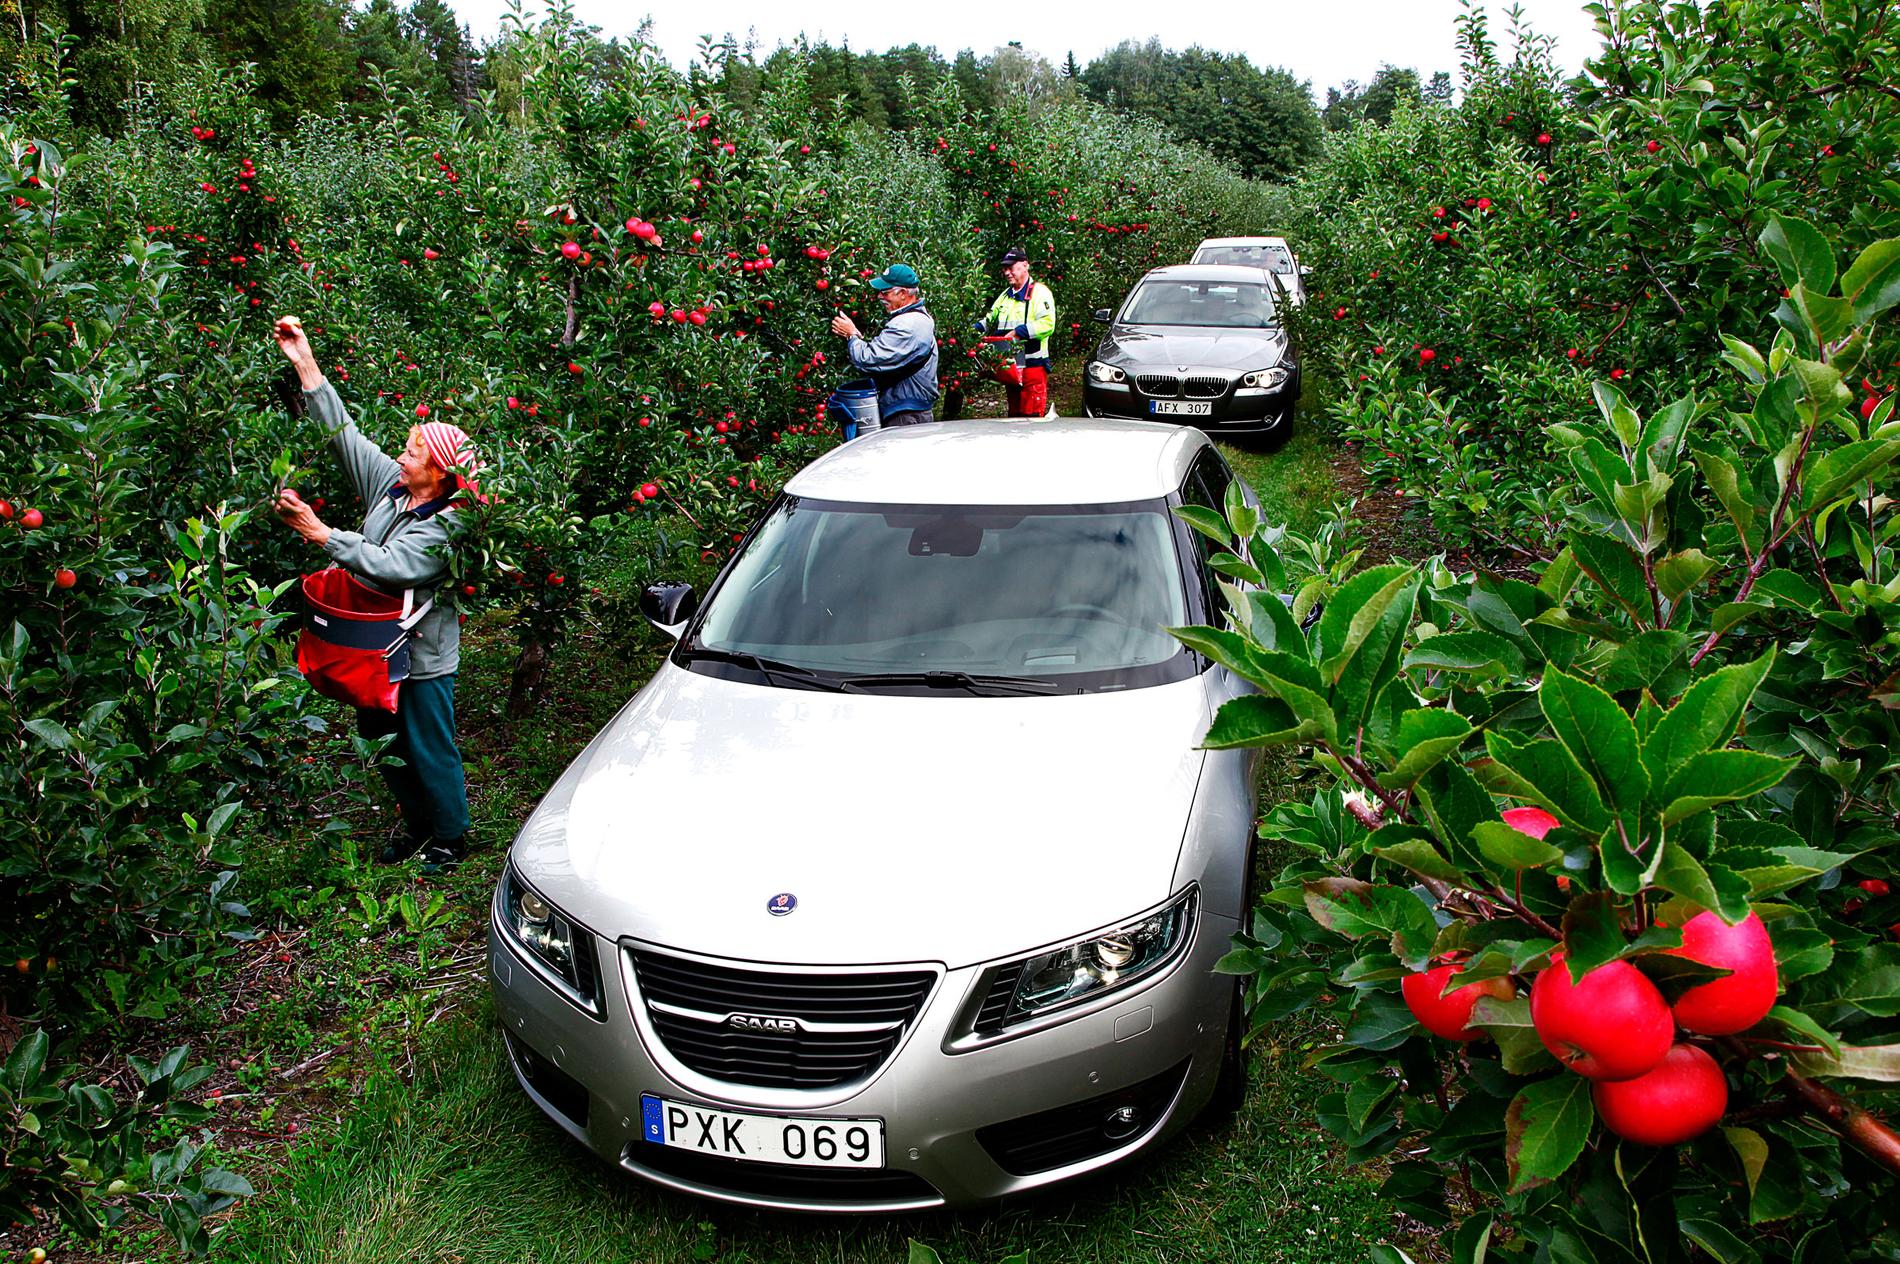 På besök i verkligheten. Kristina Wigren, Alfons Henriksson och Ove Olssonfick besök i äppelträdgården på Isaksö av Saab 9-5 och dess tyska konkurrenter BMW 5-serien och Mercedes E-klass. Men bilfägring i all ära, Jaspi-äpplet lockar mer.